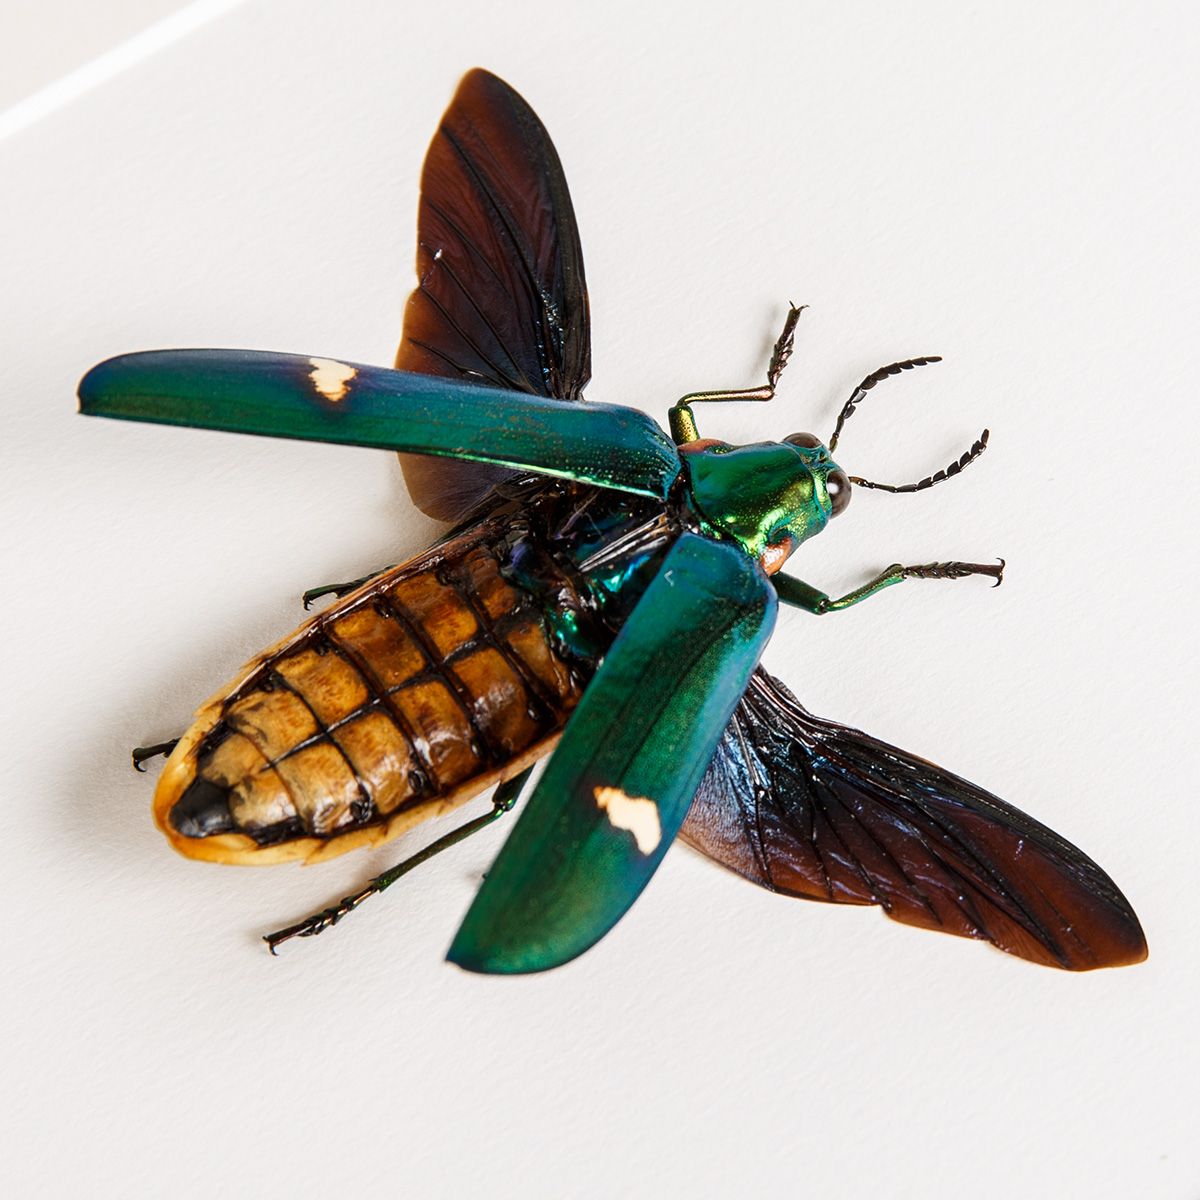 Metallic wood-boring Beetle in Box Frame (Megaloxantha bicolor)